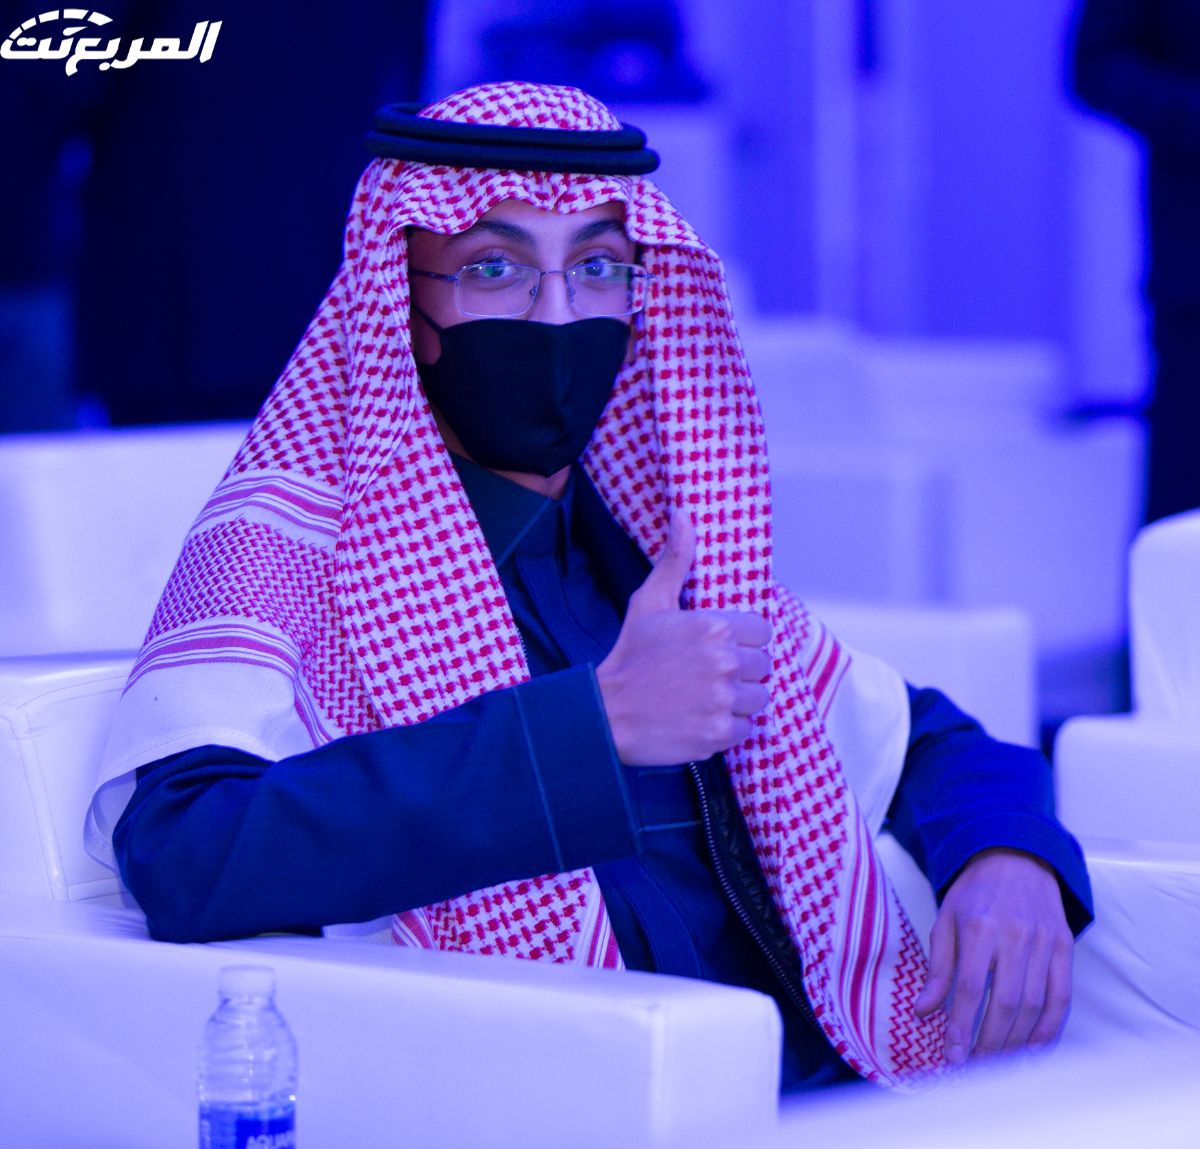 صور من حفل تدشين كاديلاك اسكاليد 2021 الجديد كلياً في السوق السعودي بوكالة "الجميح للسيارات" 90